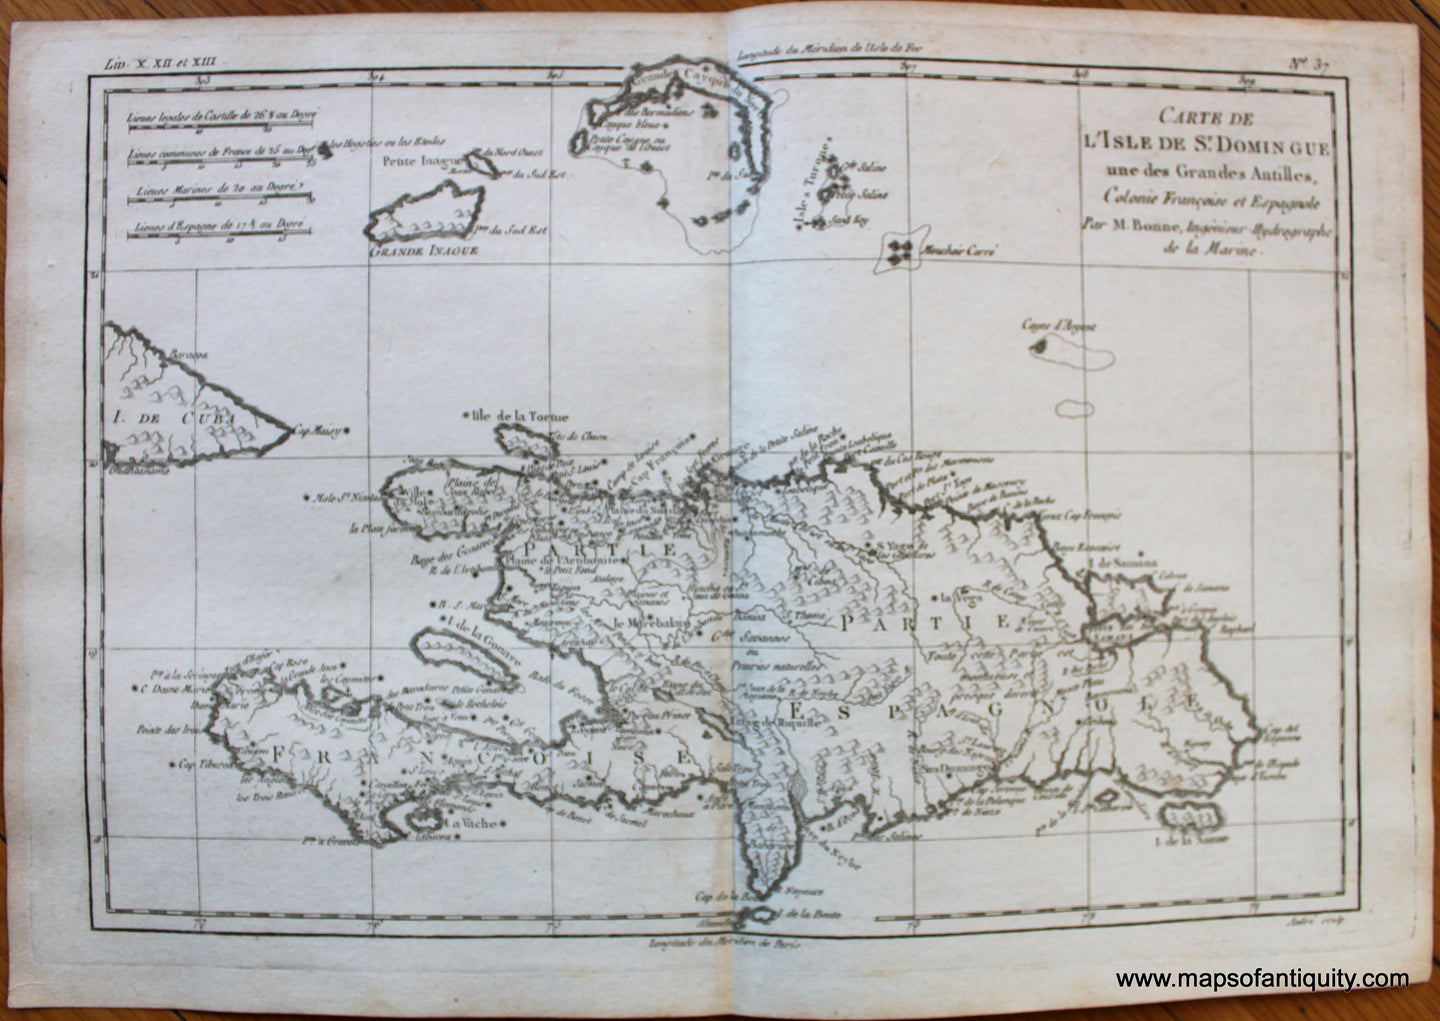 Antique-Map-L'isle-de-Saint-Domingue-une-des-Grandes-Antilles-colonie-Francaise-et-Espagnole-